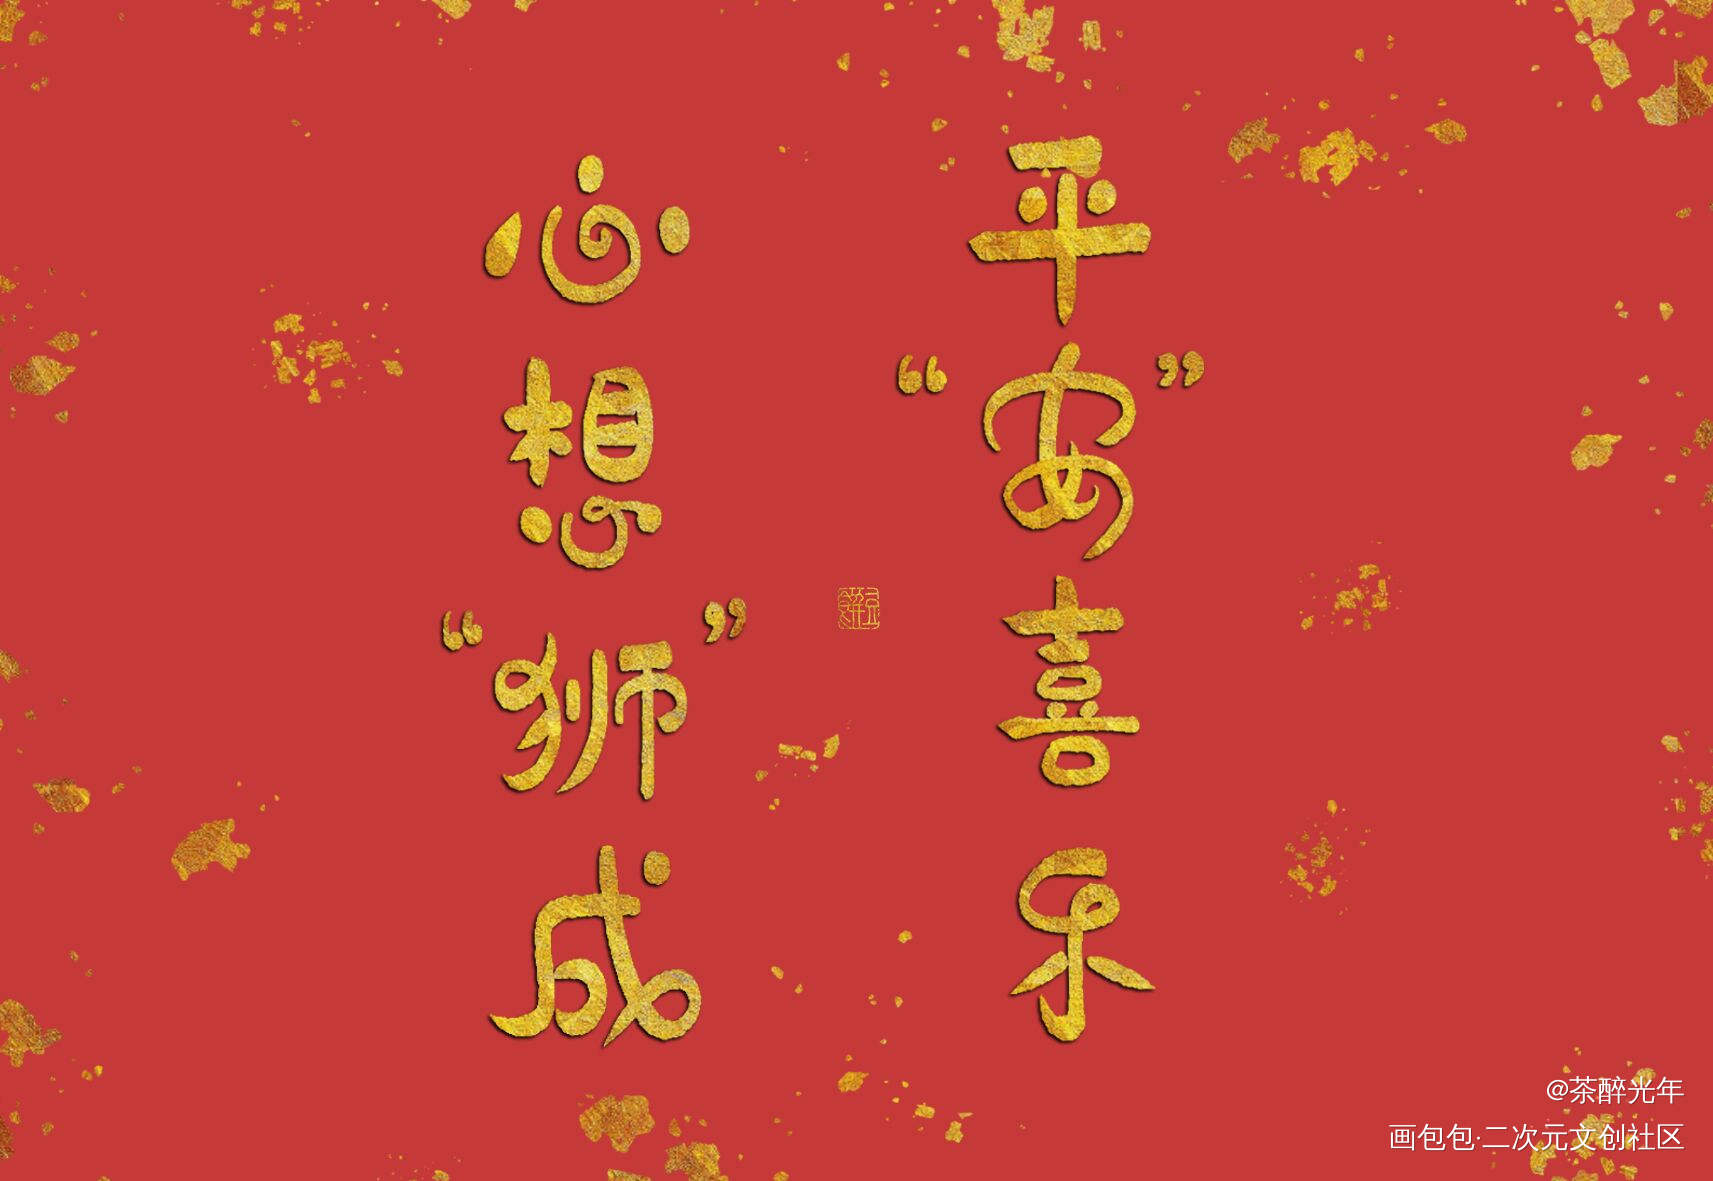 喜乐顺遂_凹凸世界雷安雷狮安迷修字体设计见字如晤板写绘画作品